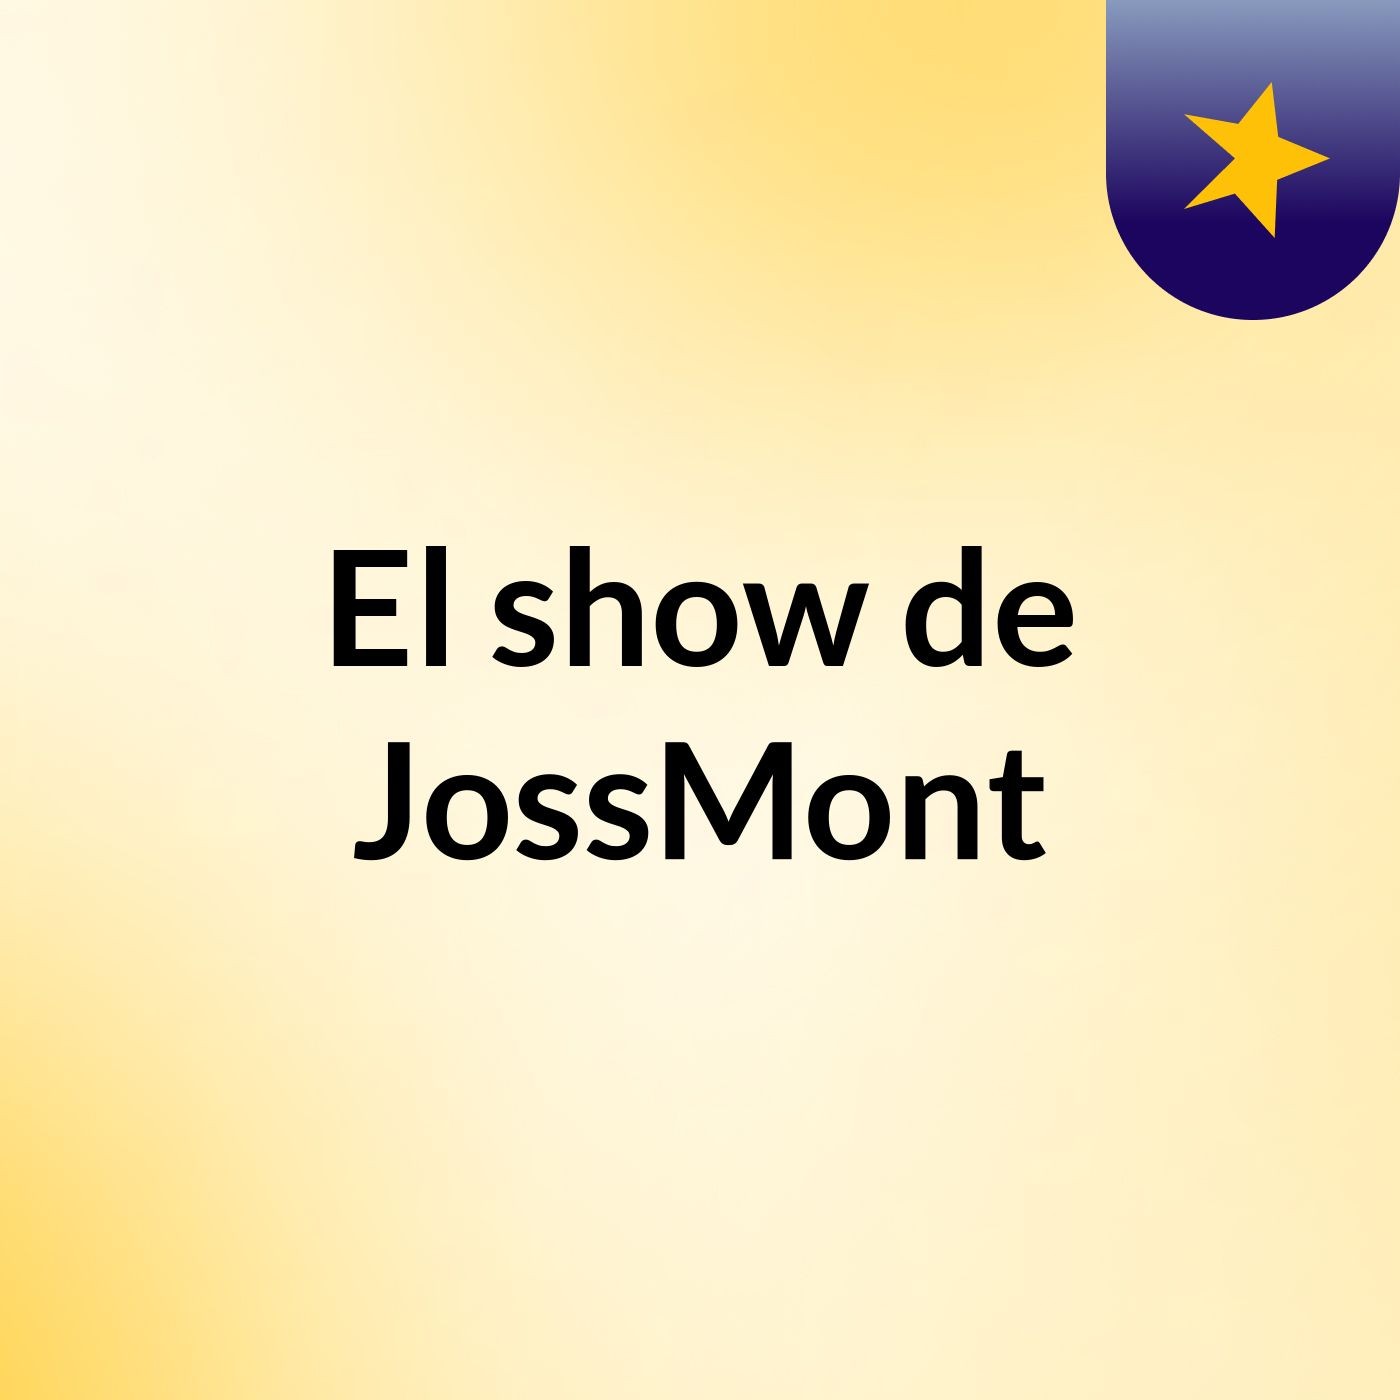 El show de JossMont